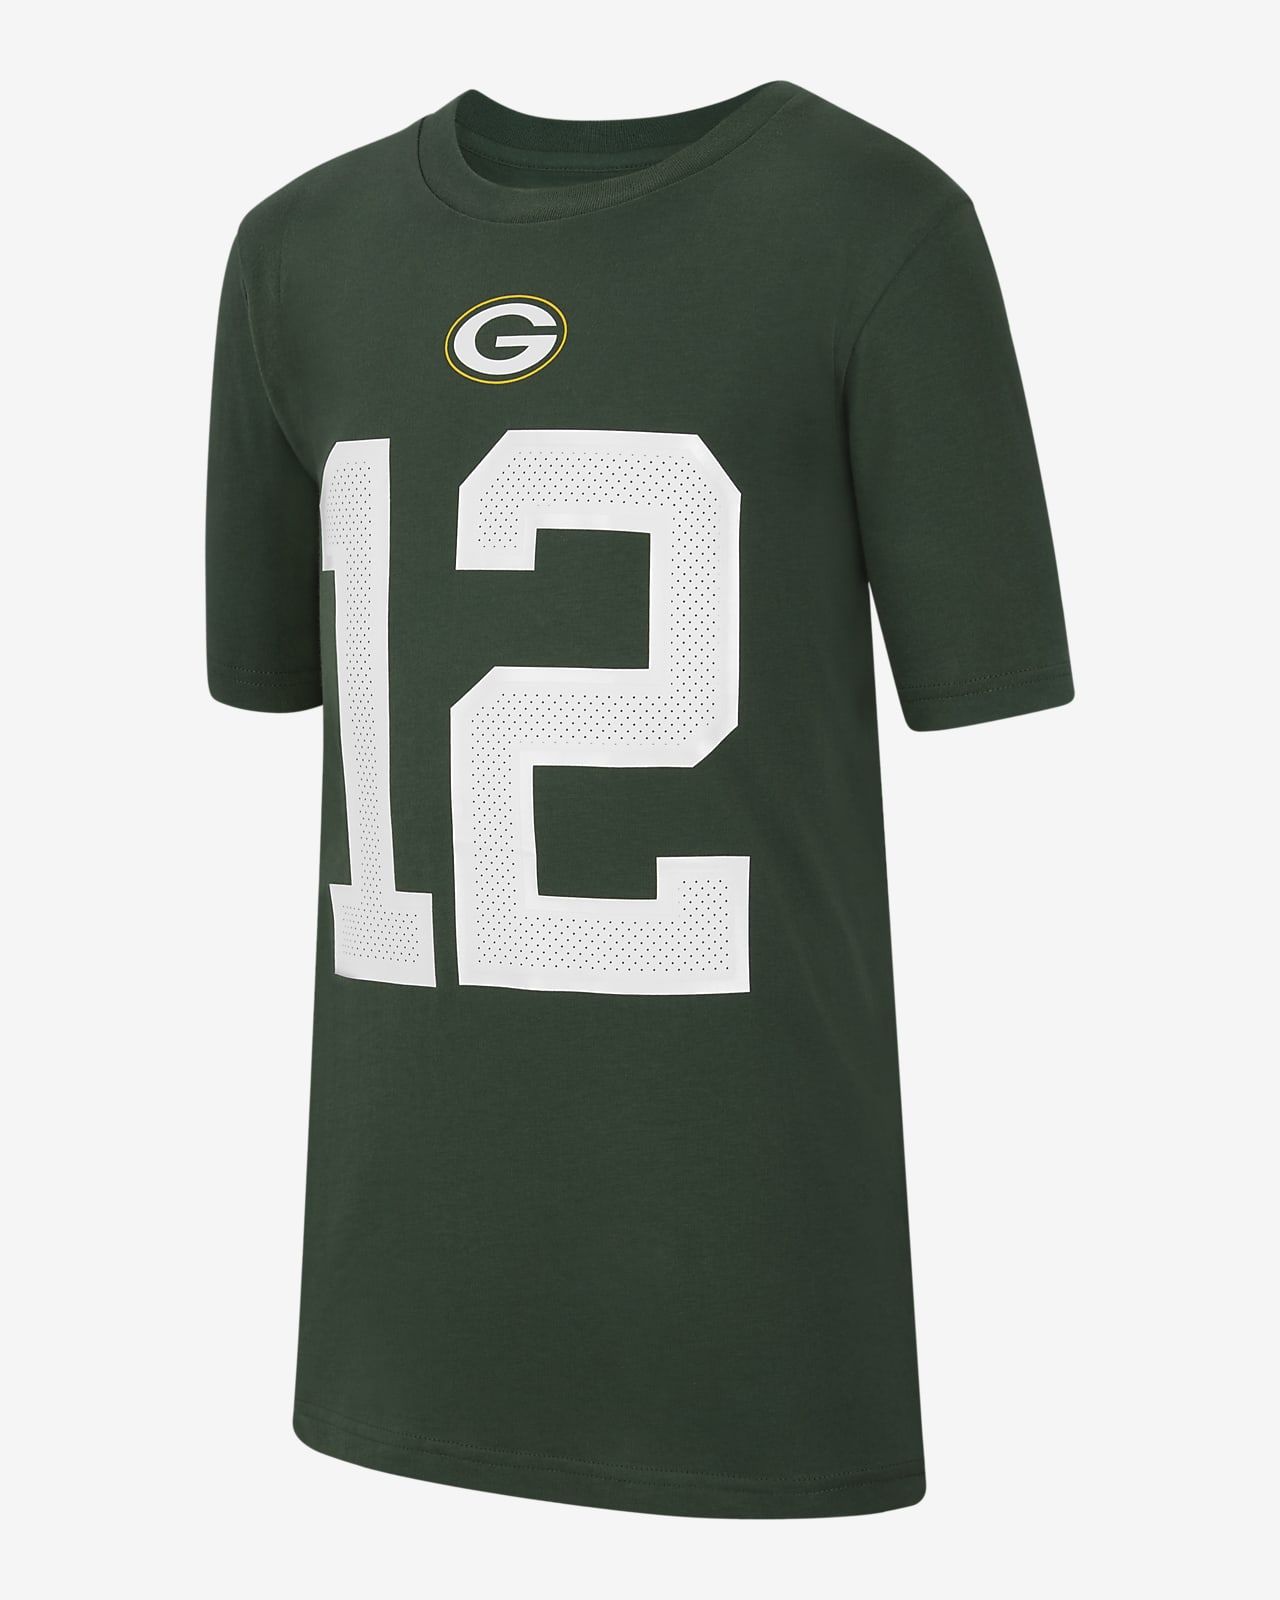 T-shirt Nike (NFL Green Bay Packers) Júnior